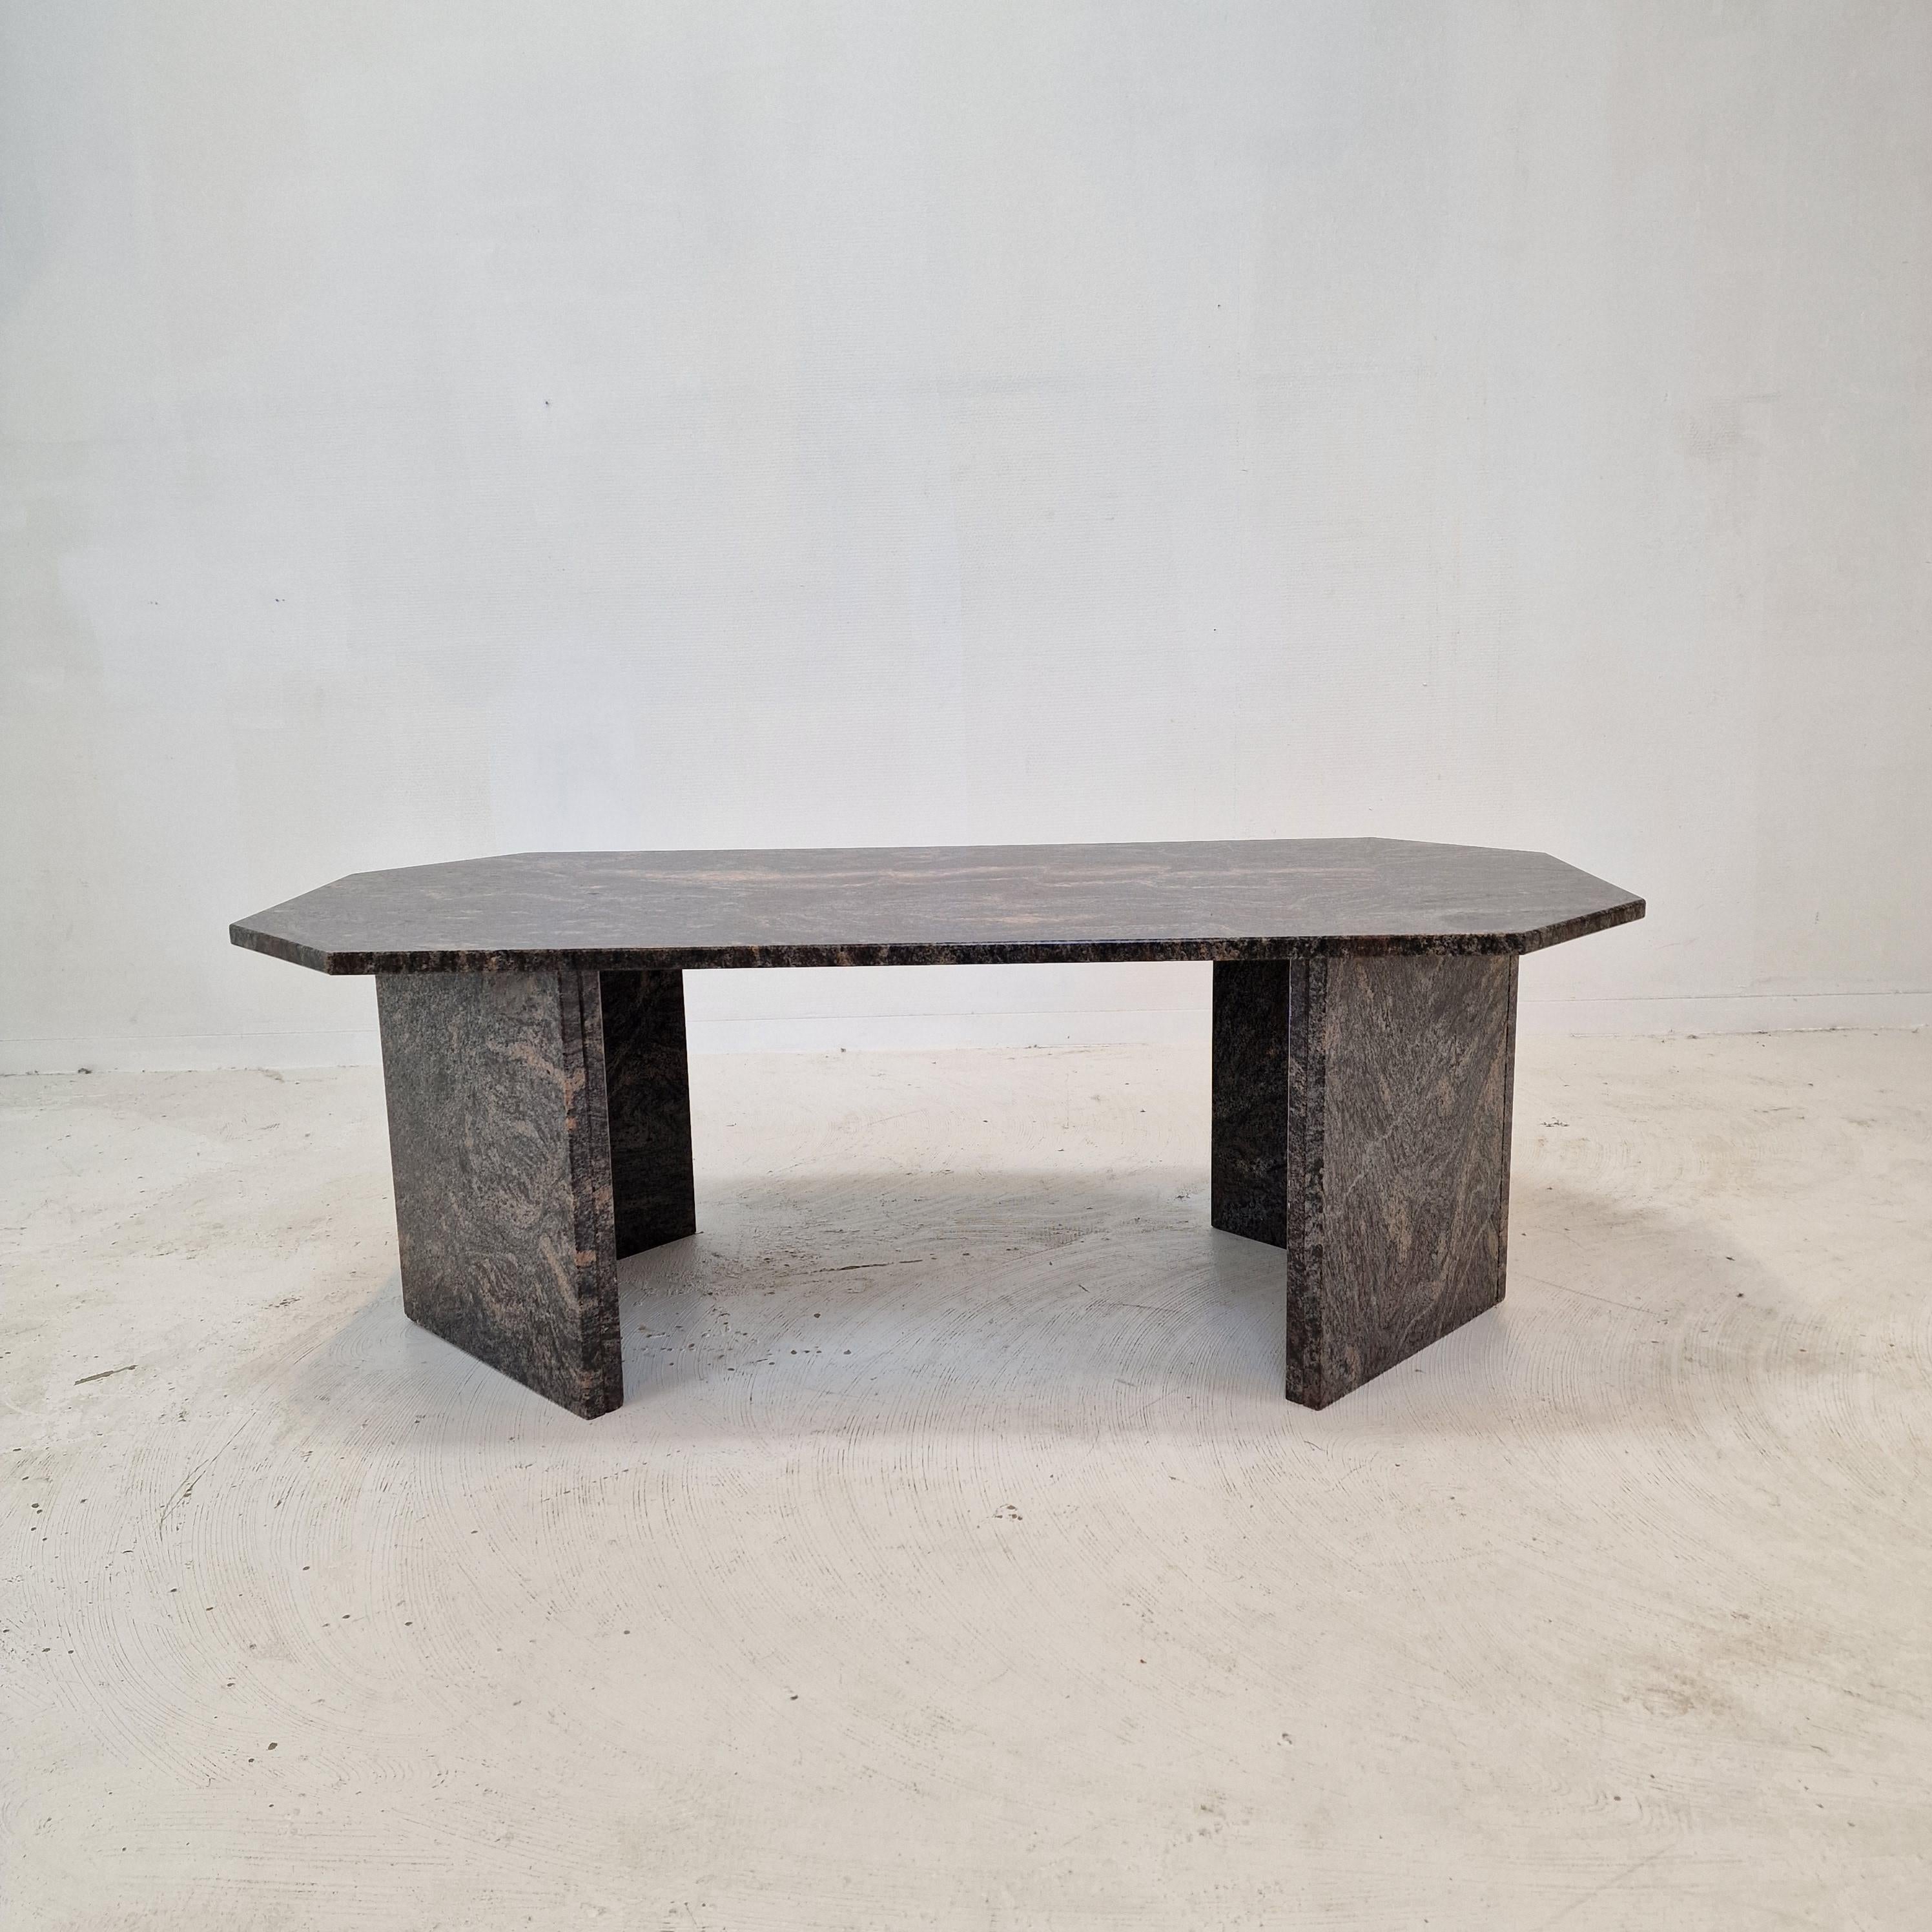 Très belle table basse italienne fabriquée à la main en granit, années 1980.

Il est fait d'un magnifique granit.
Veuillez prendre note des très beaux motifs.

La table est en très bon état, voir les photos.

Nous travaillons avec des emballeurs et